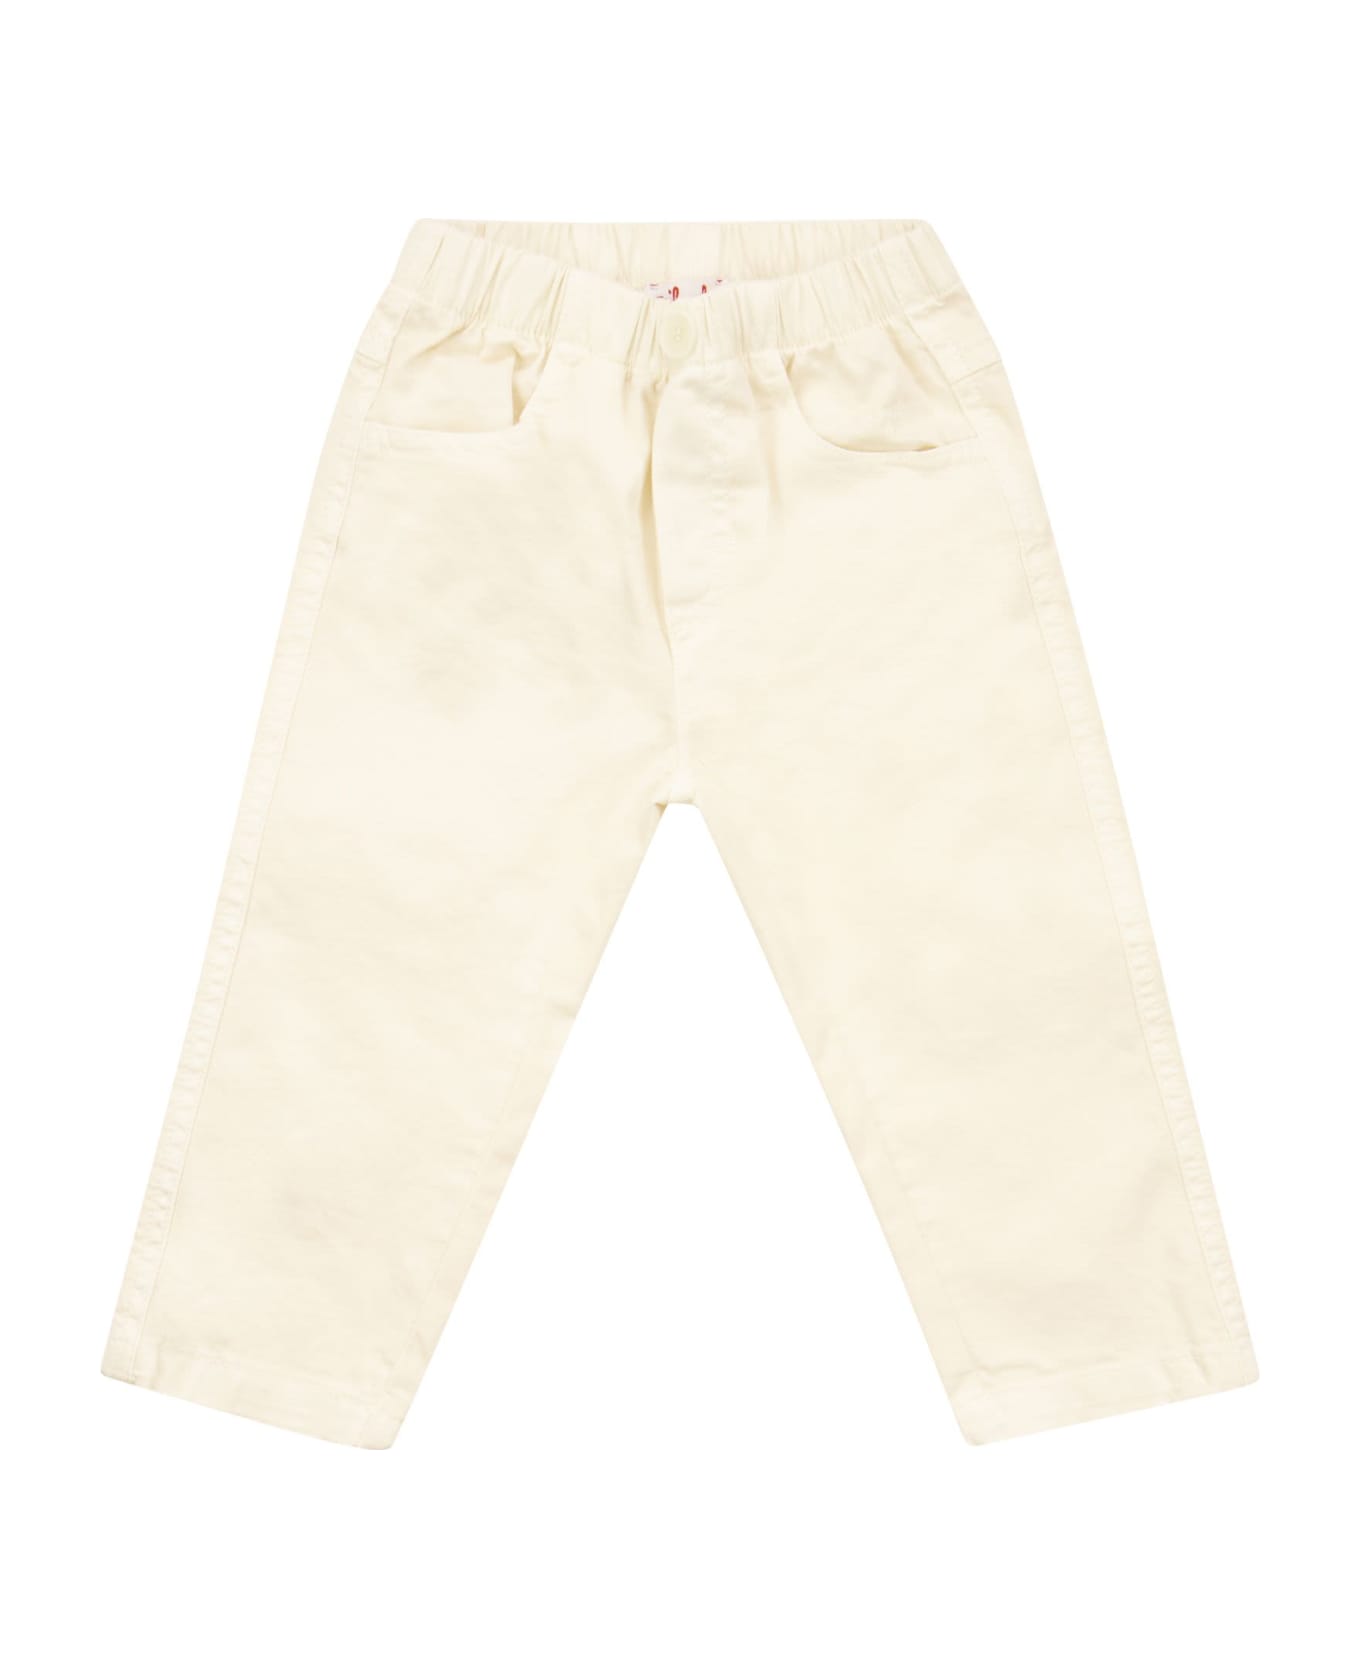 Il Gufo Cotton Trousers - Cream